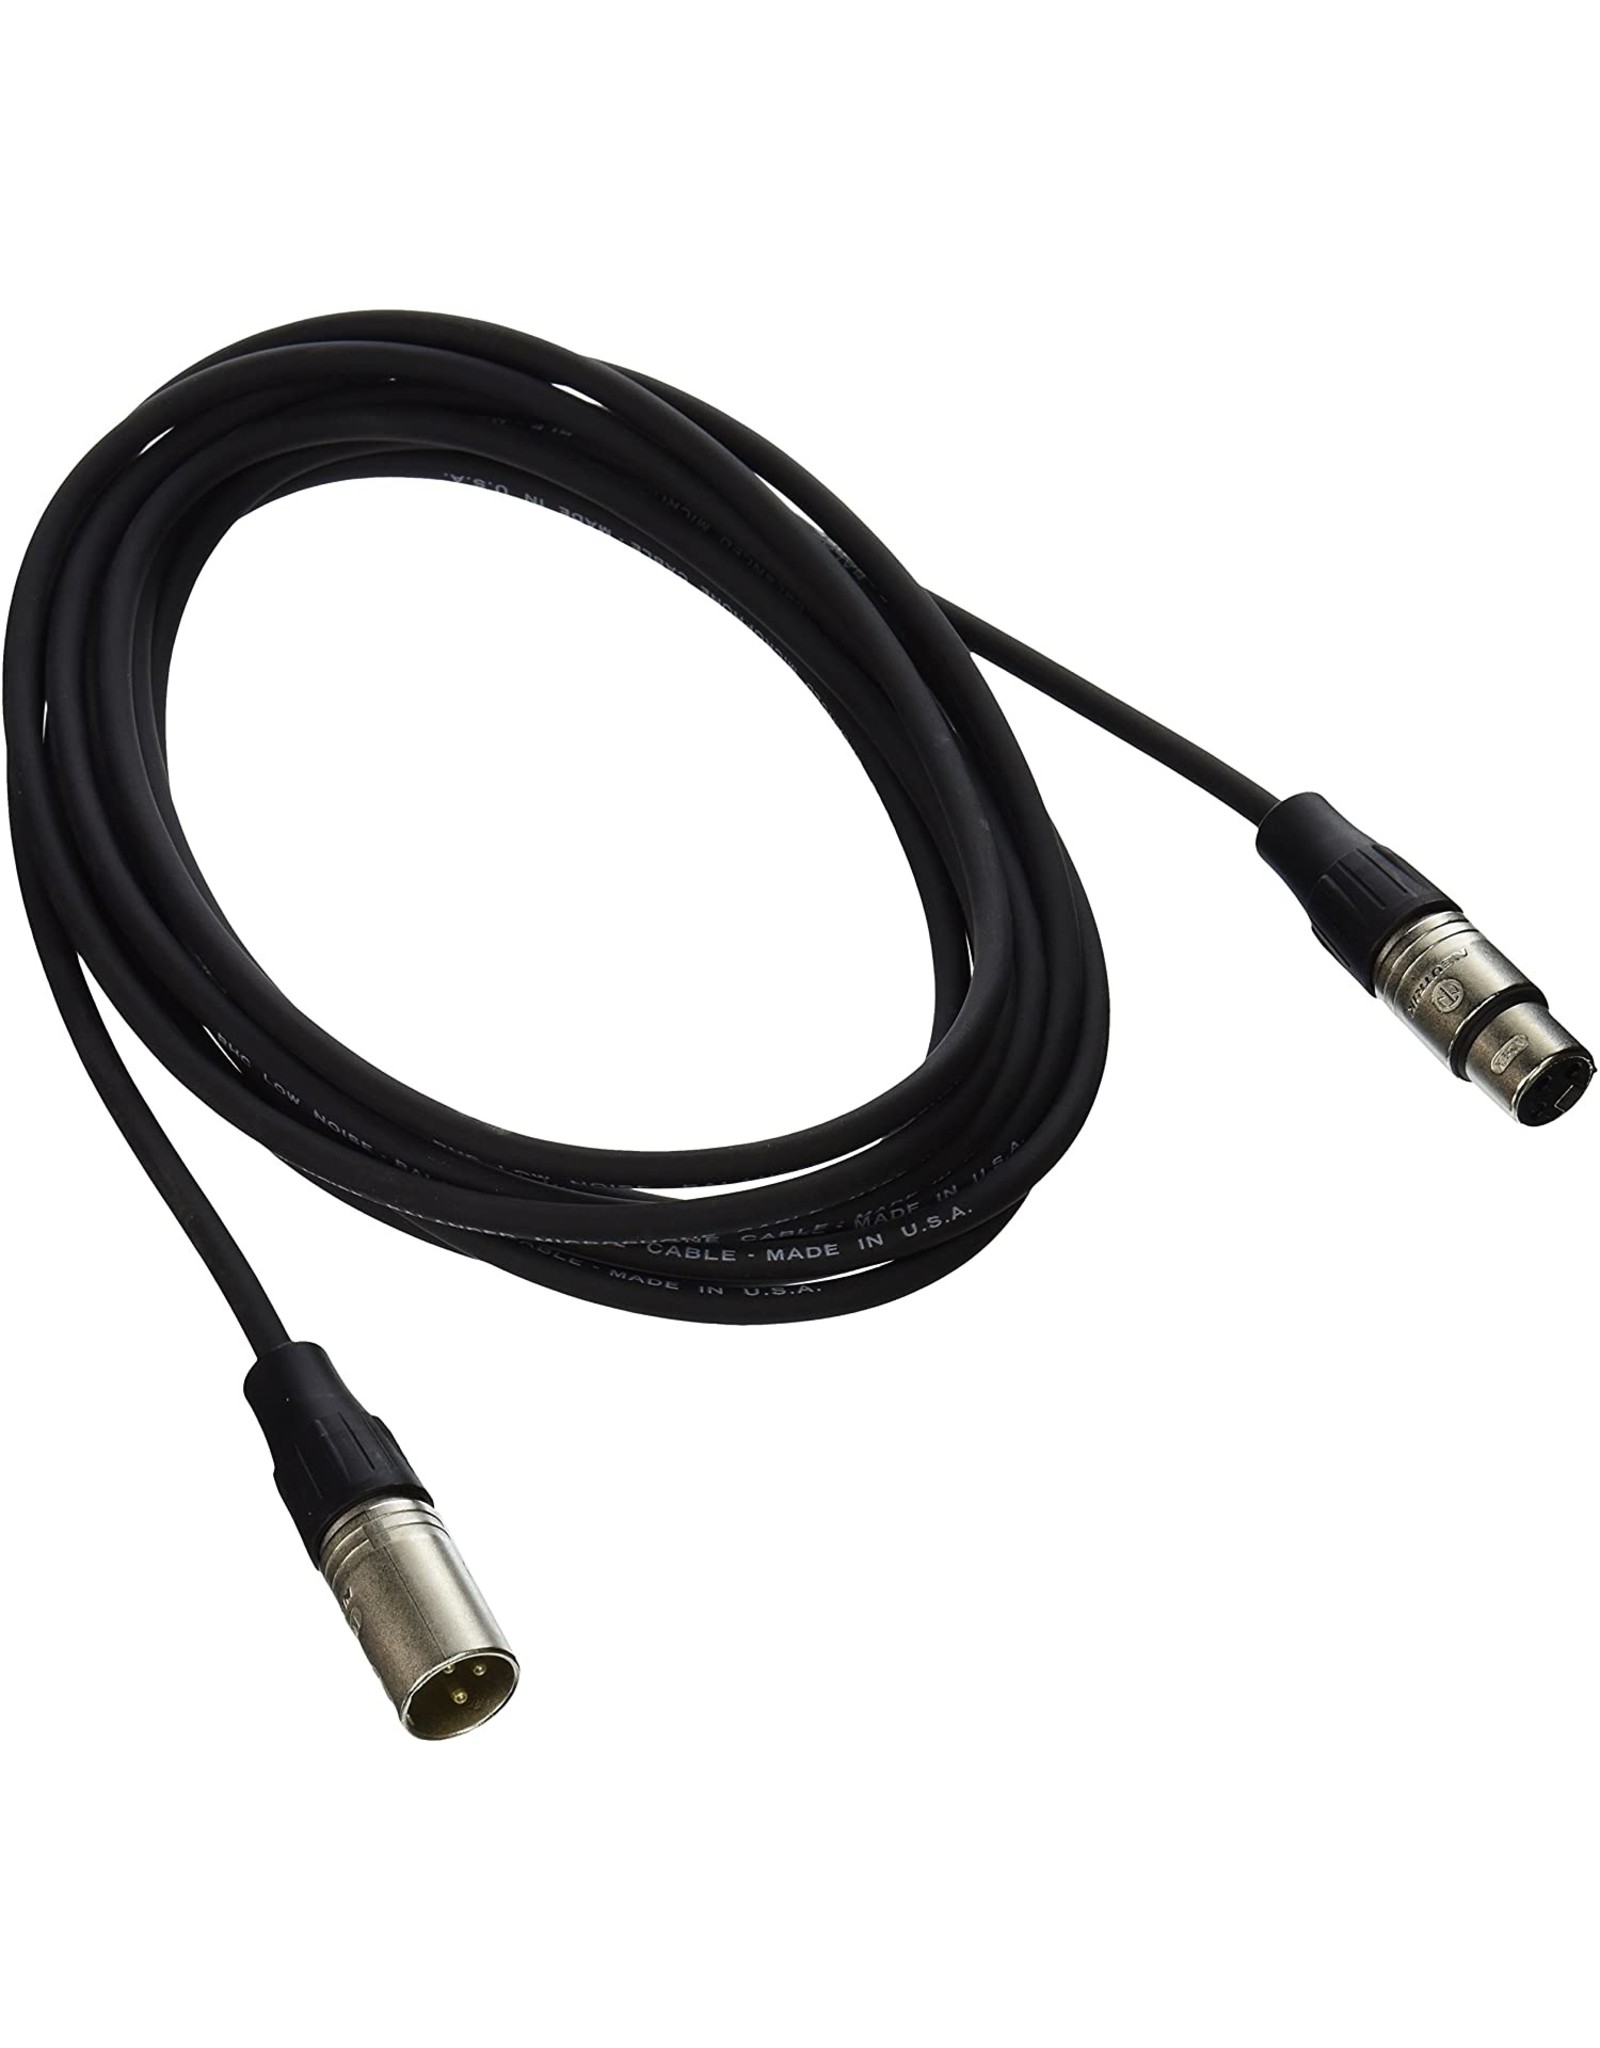 Rapco XLRM to XLRF Microphone Cable 6 Ft Neutrik Ends